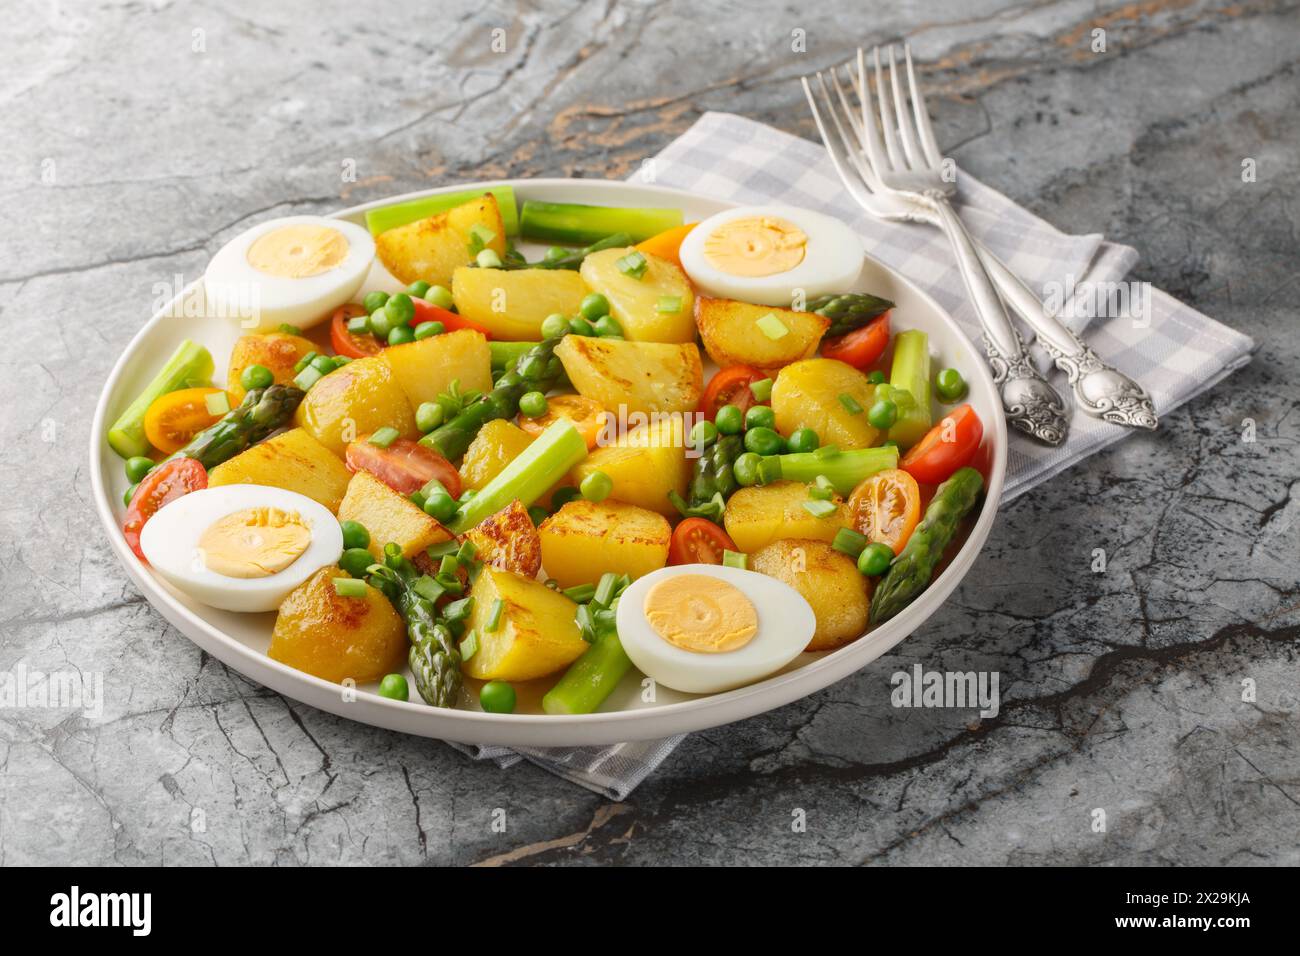 Patate novelle fritte con asparagi, pomodori ciliegini, uova sode e piselli verdi da vicino in un piatto sul tavolo. Orizzontale Foto Stock